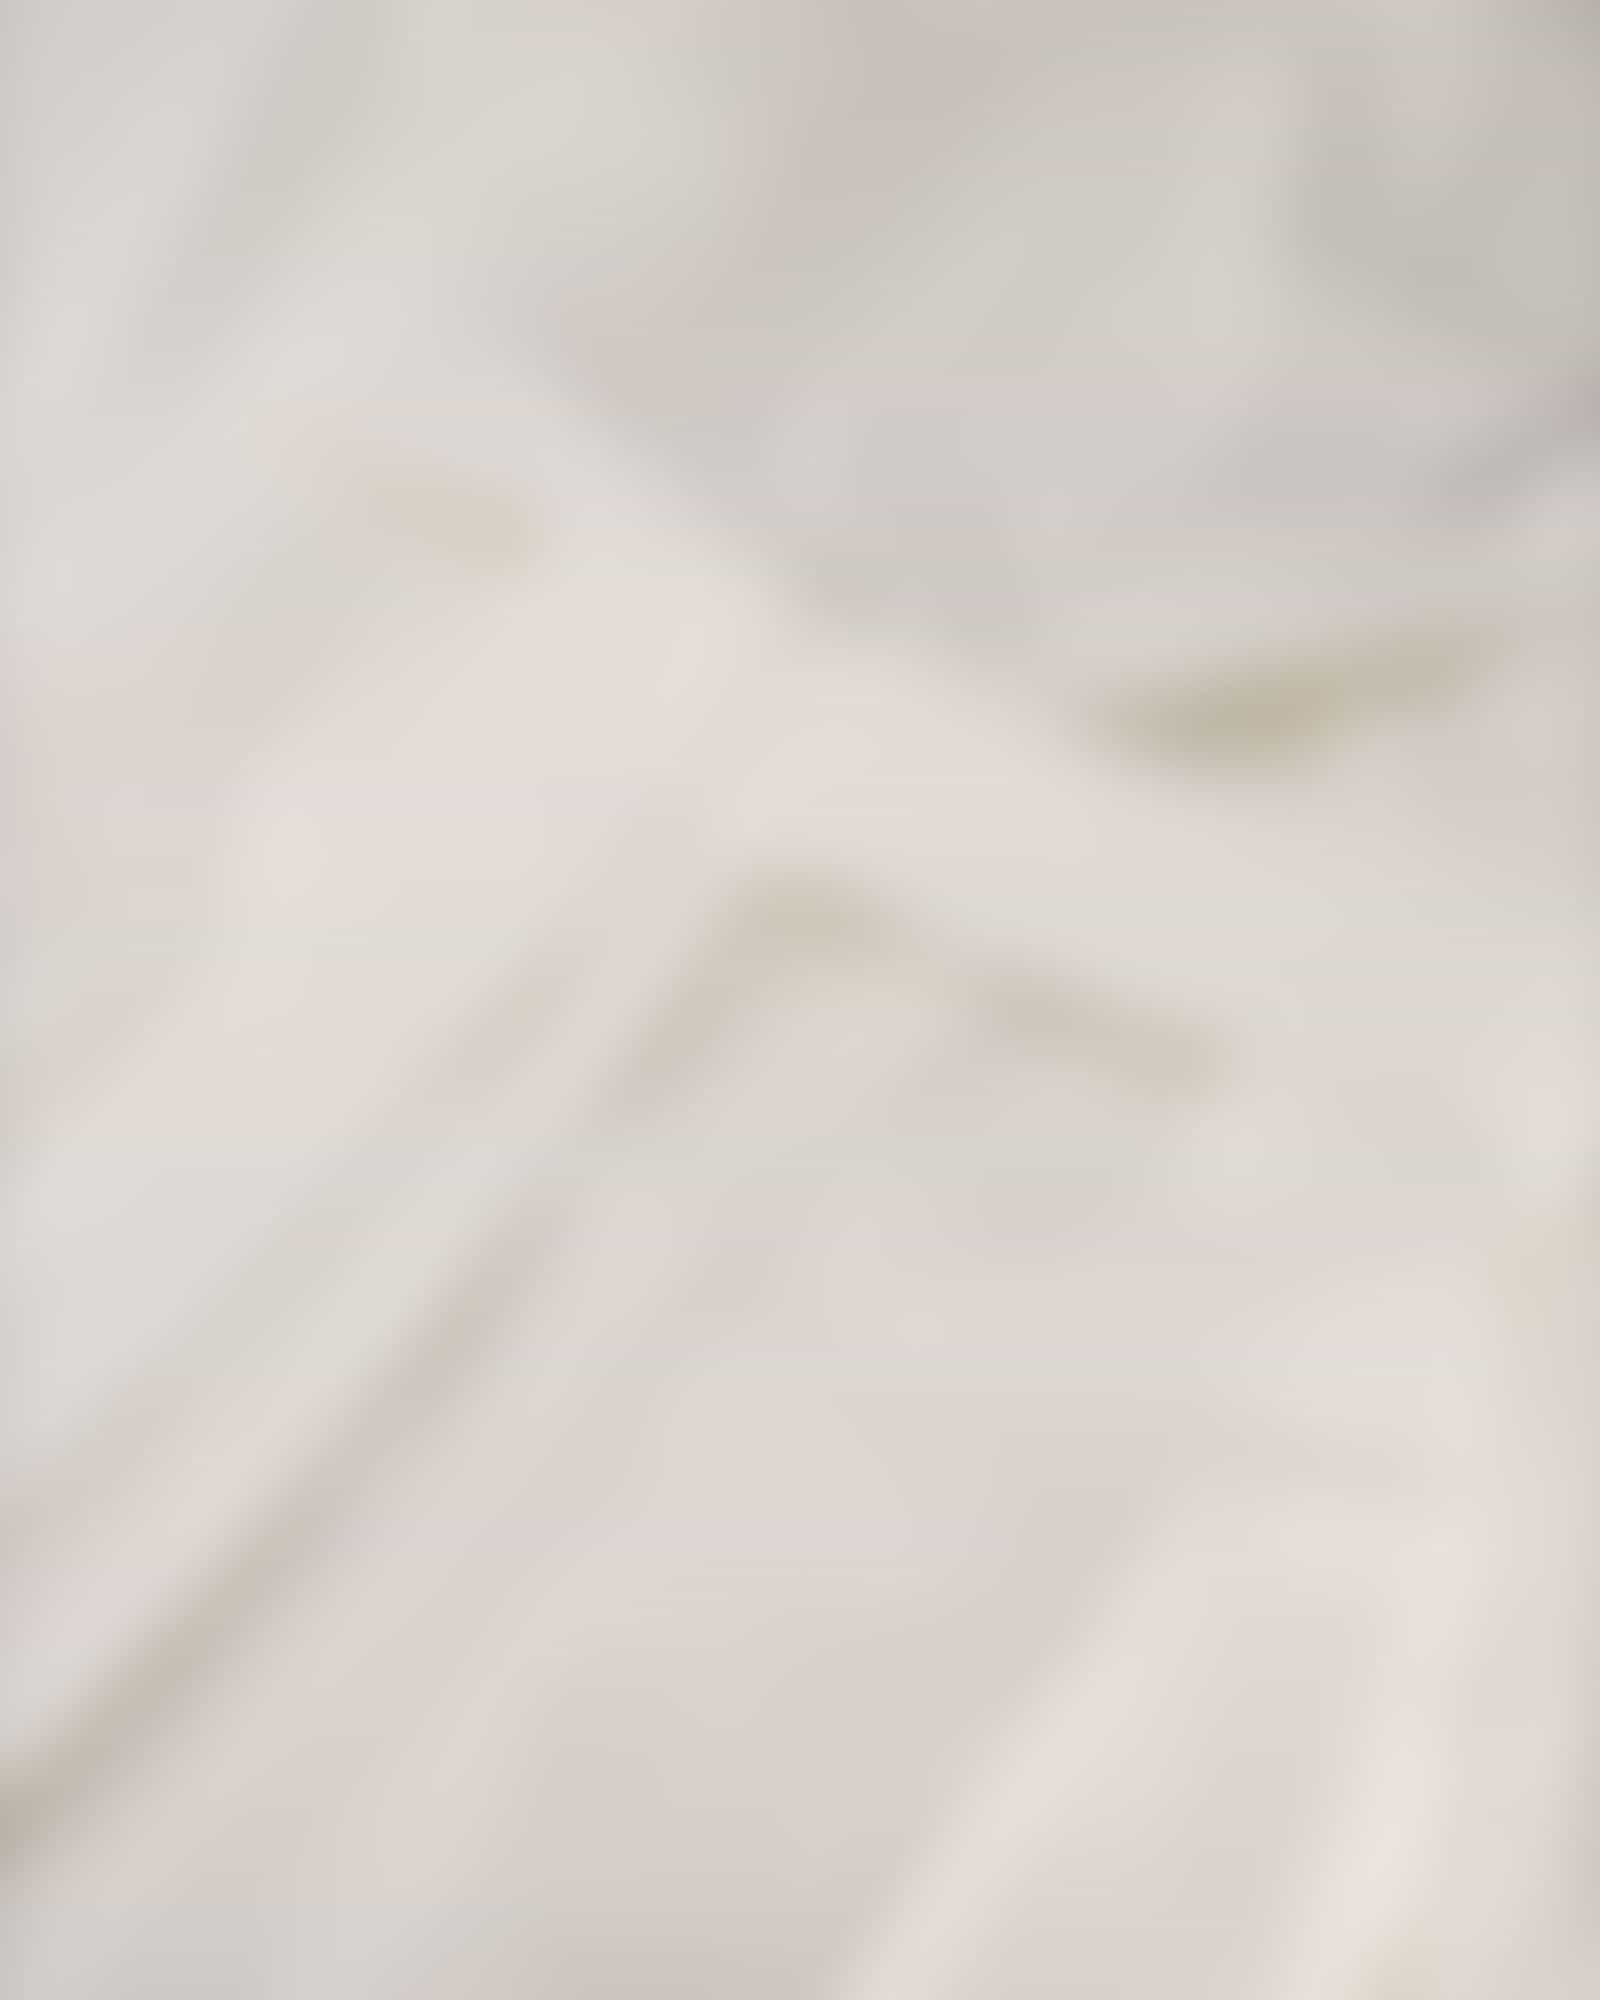 JOOP Herren Bademantel Kimono Pique 1656 - Farbe: Weiß - 600